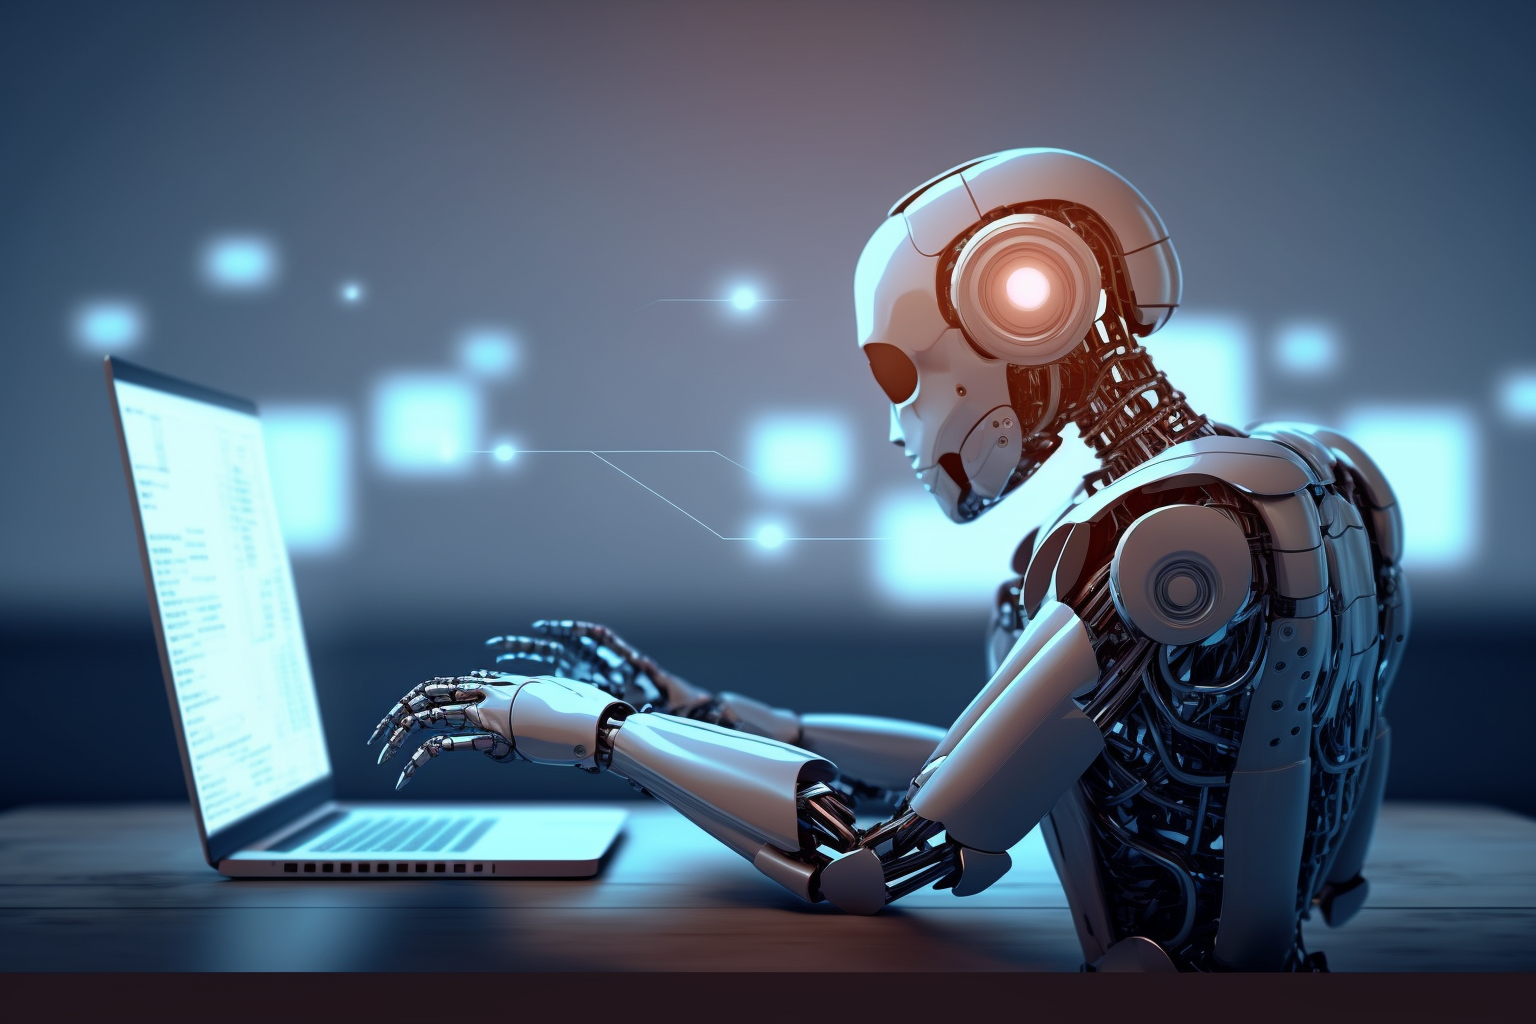 Etiske aspekter ved chatrobotter i undervisning - overgang til automatiseringsetik